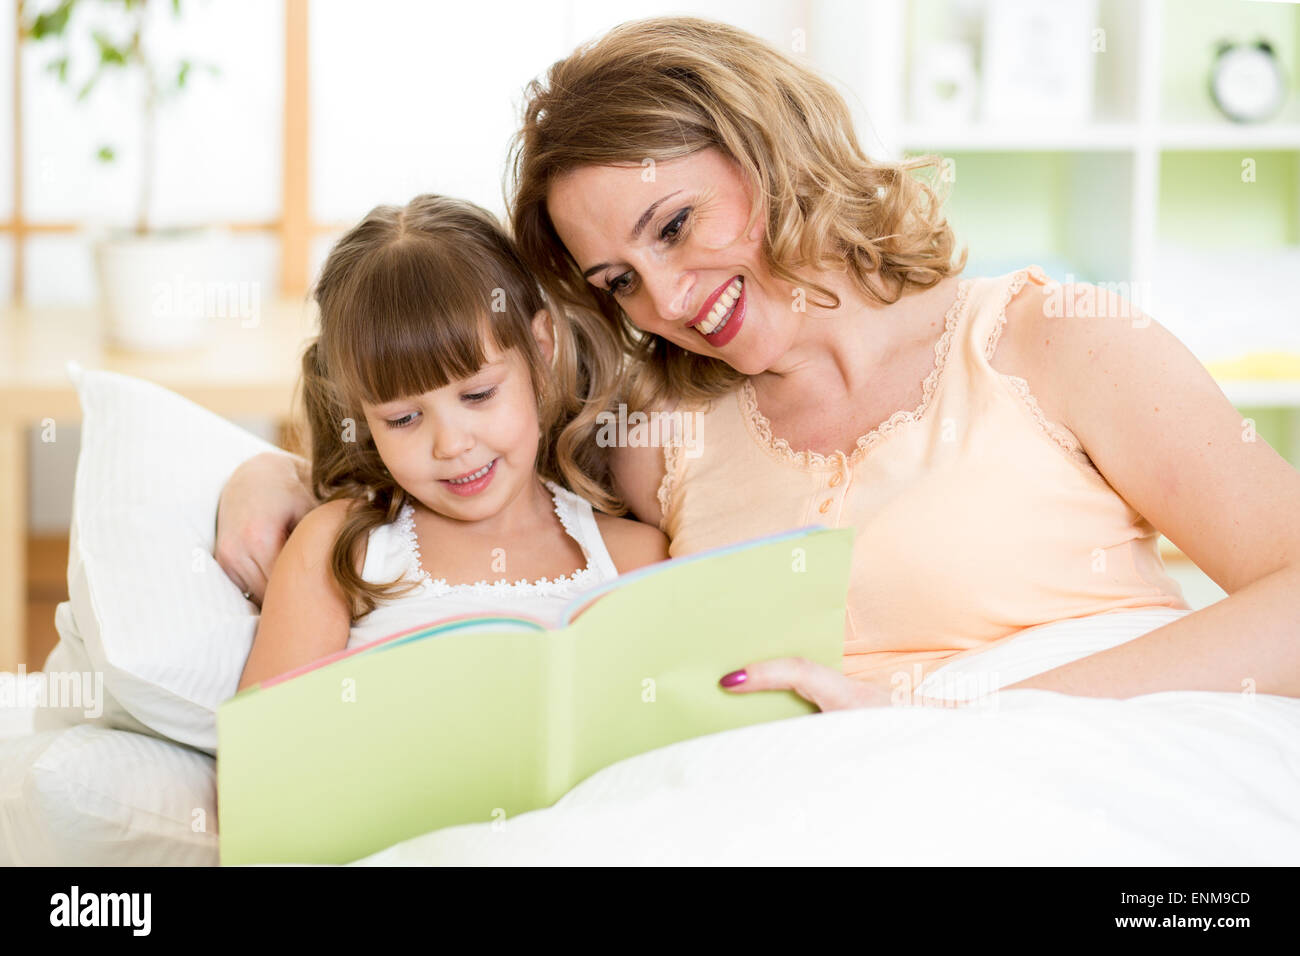 Madre e hija feliz leer juntos un libro en la cama Foto de stock